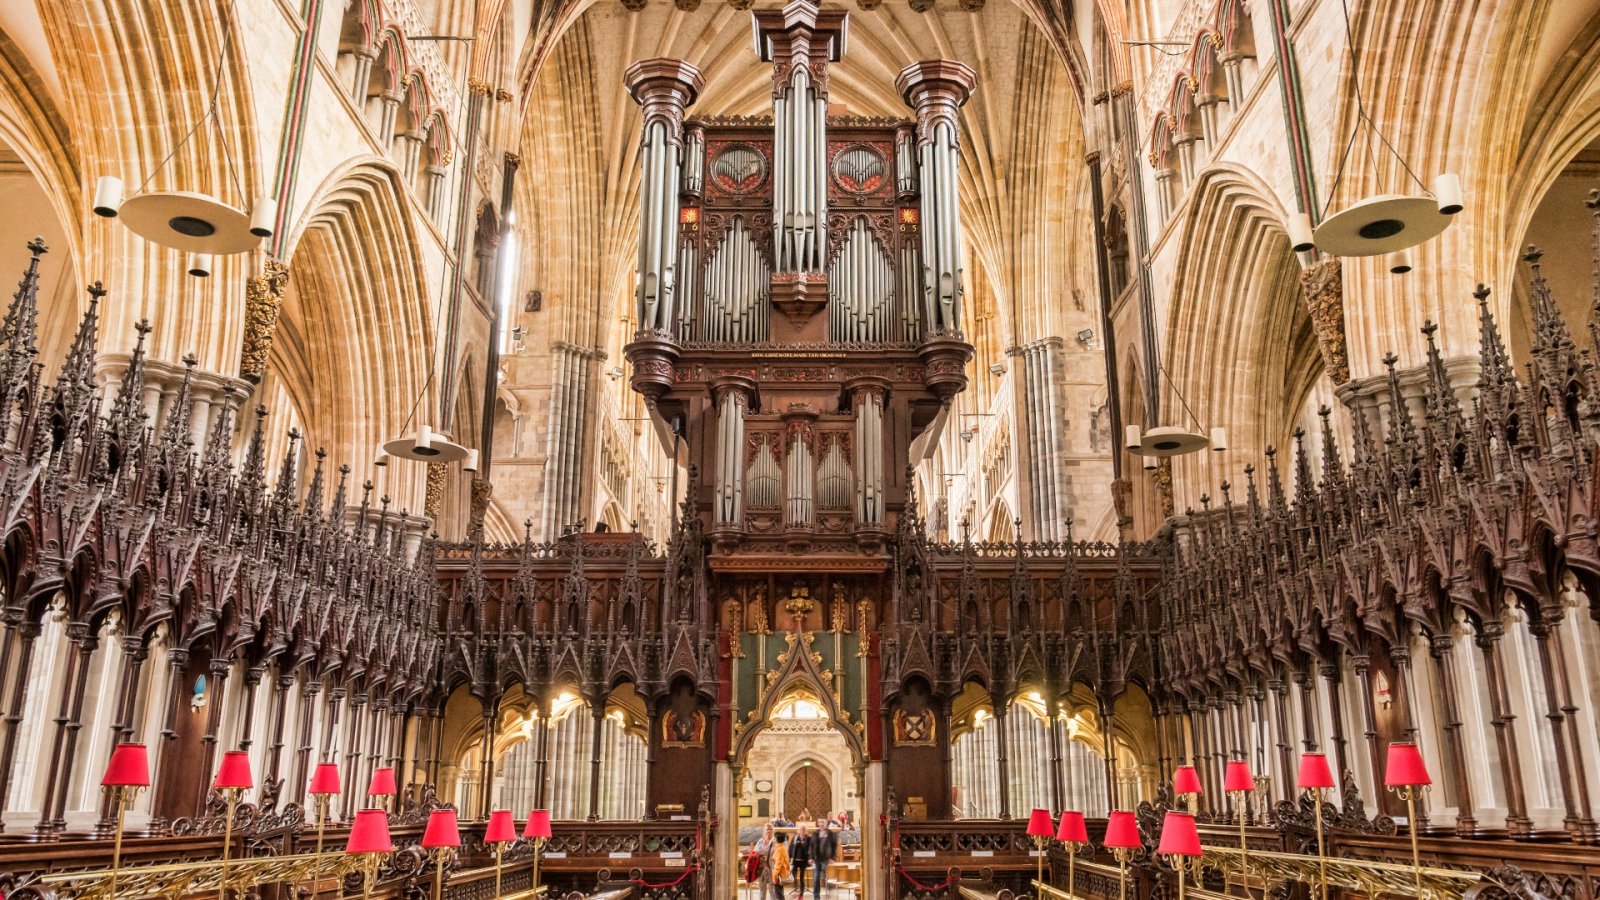 Découvrez ces fantastiques photographies d'intérieurs d'églises dans l'Angleterre rurale